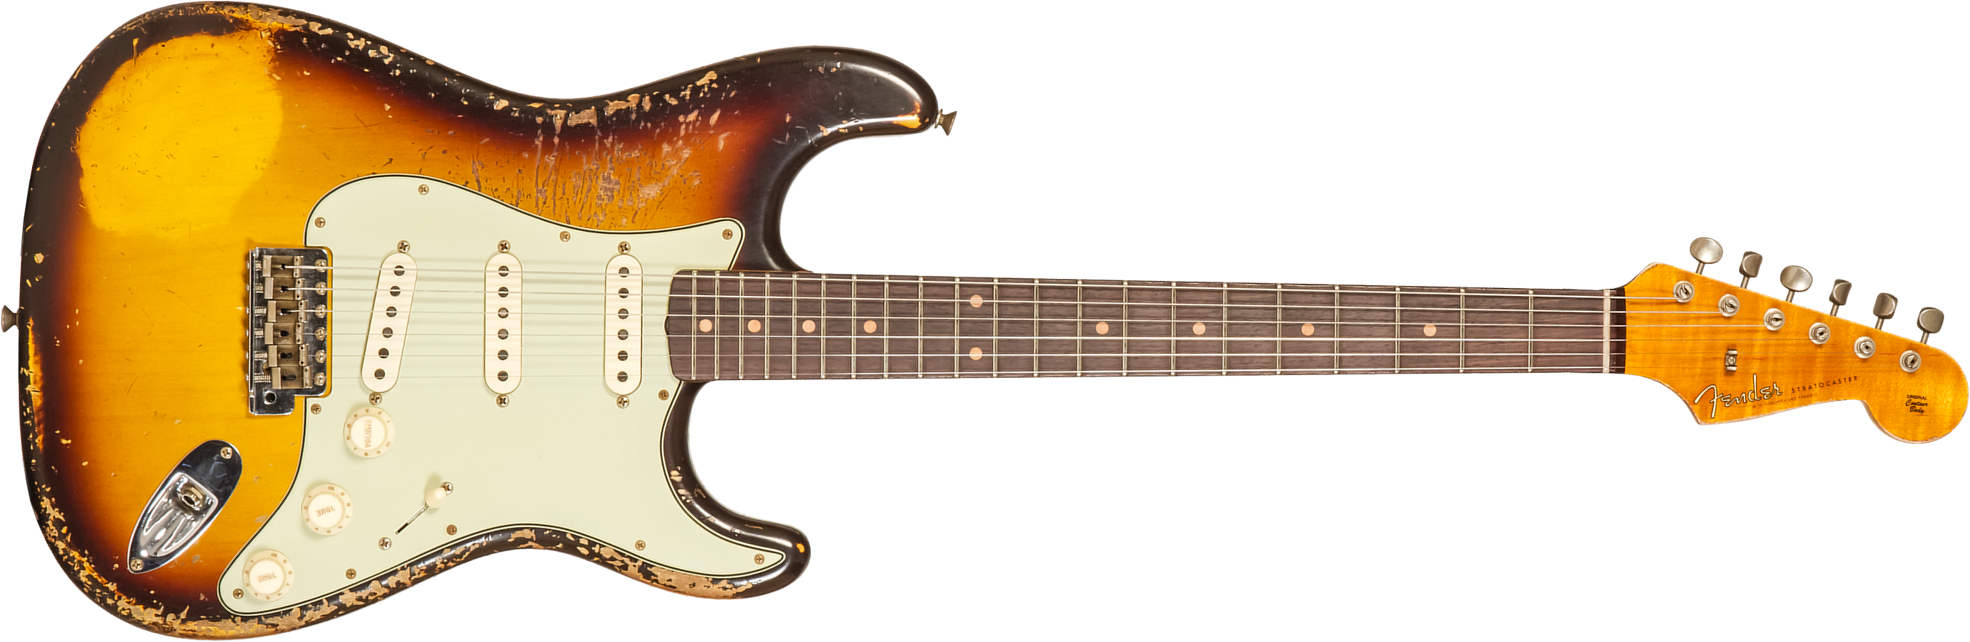 Fender Custom Shop Strat 1959 3s Trem Rw #cz571958 - Super Heavy Relic Aged Chocolate 3-color Sunburst - Str shape electric guitar - Main picture